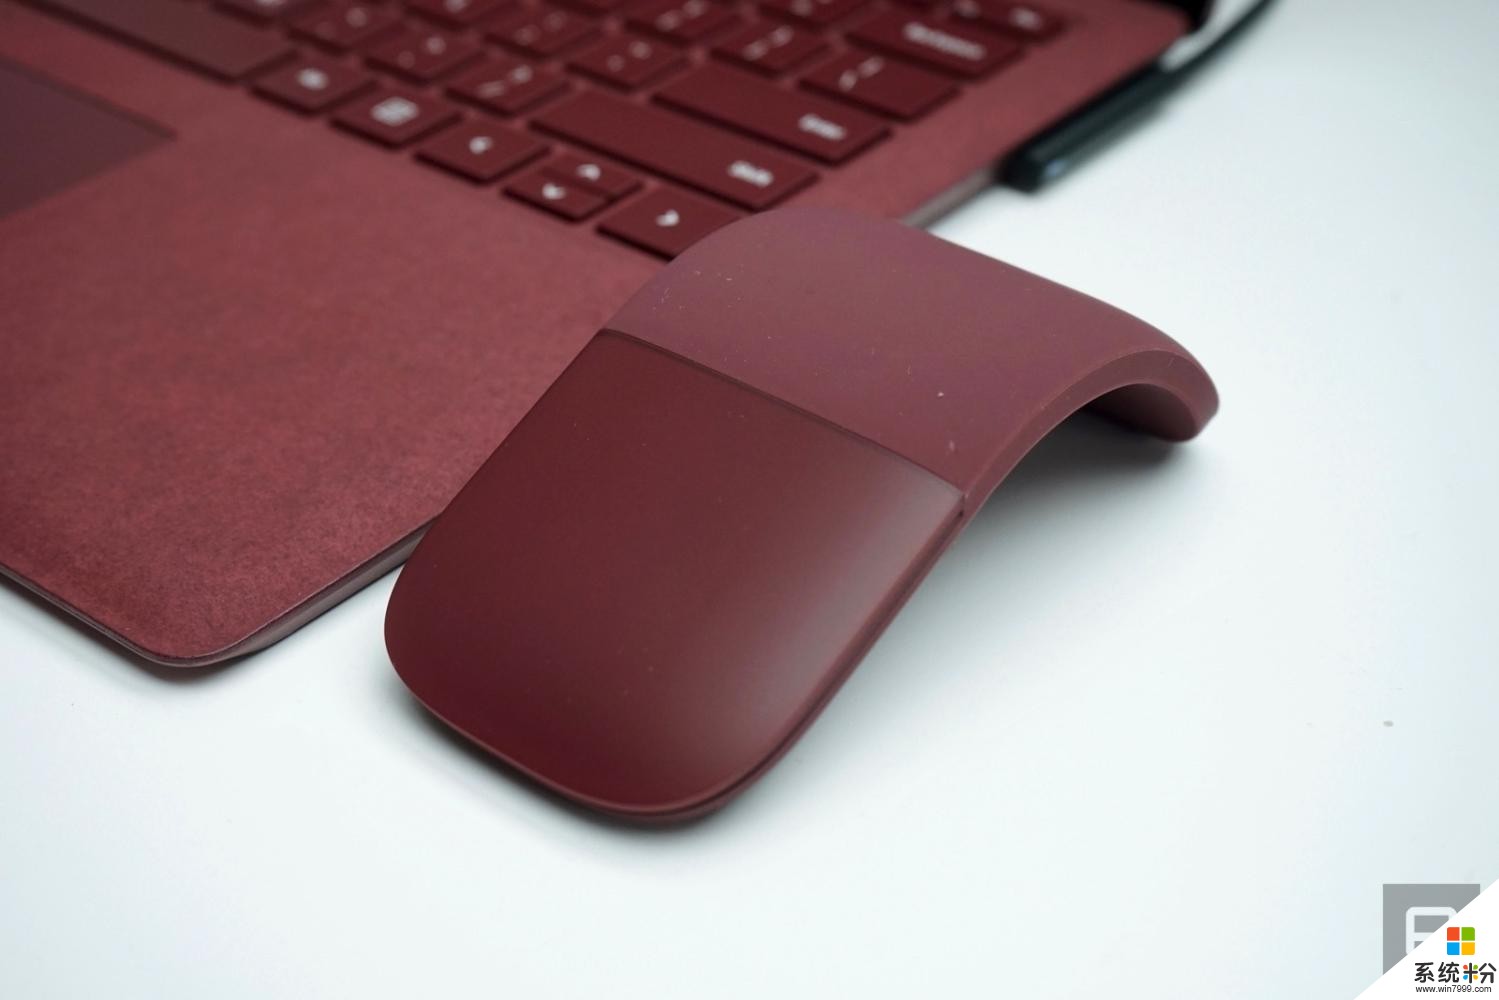 总算有早来的 微软Surface Arc鼠标6月上市